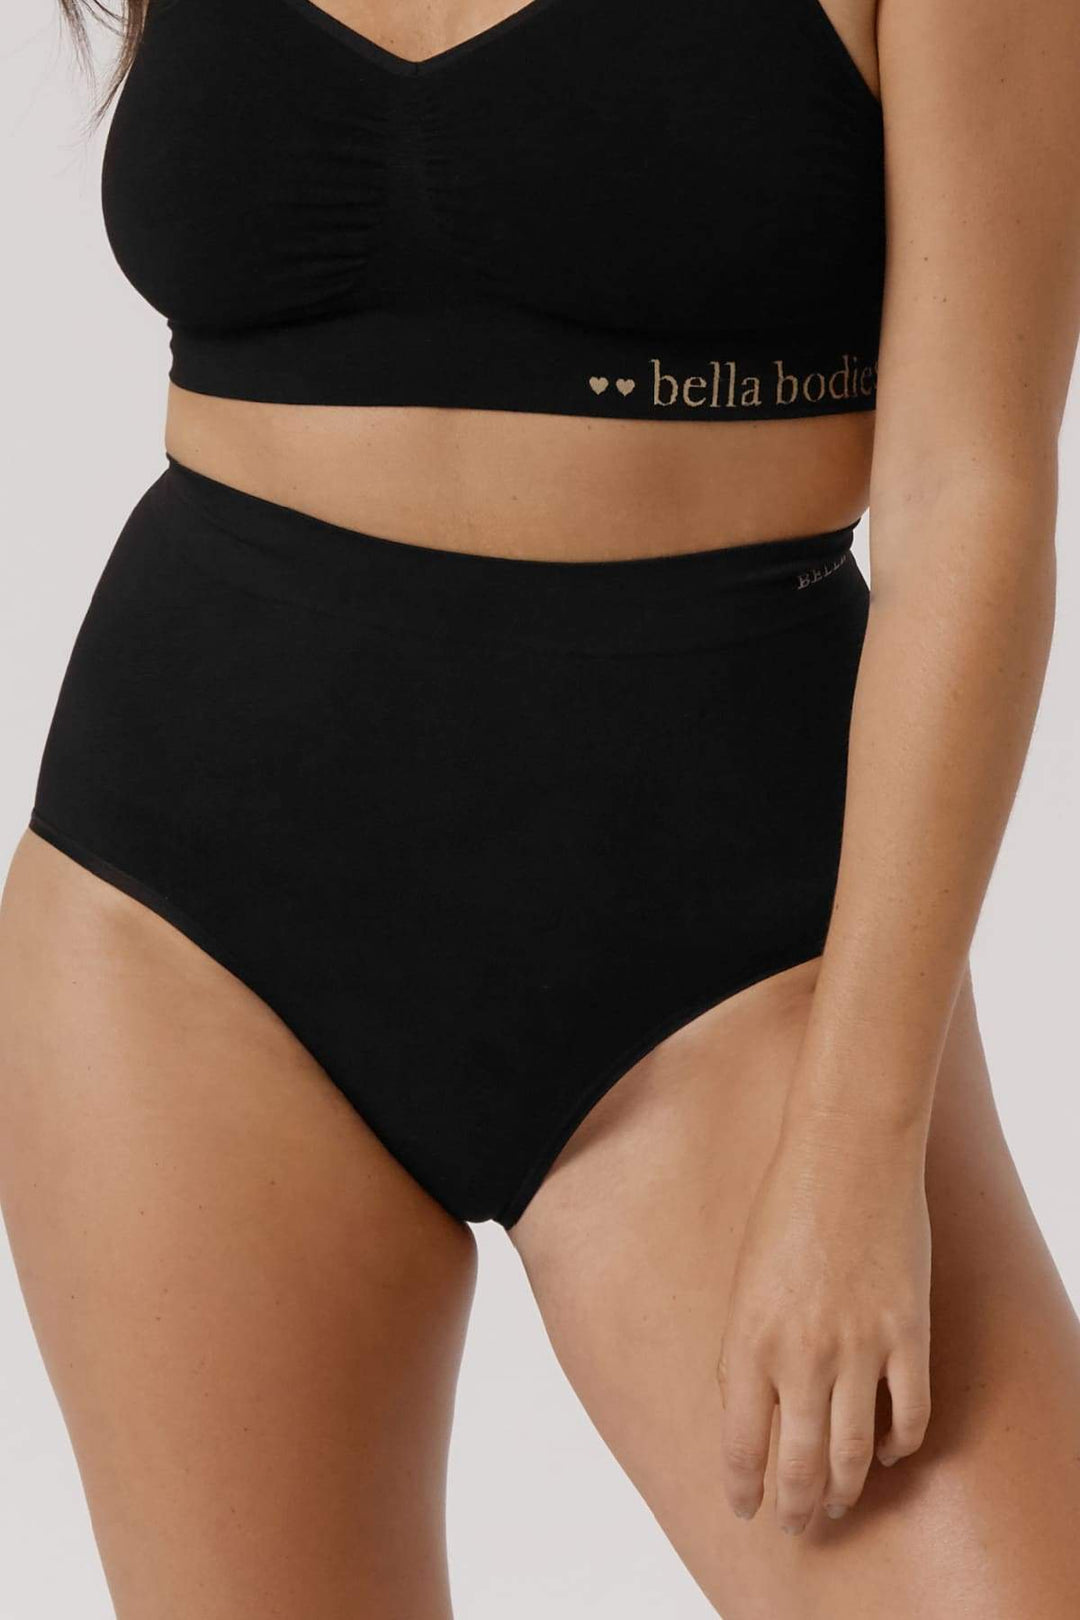 Bamboo Firming Underwear I Women's High Waist Comfortable Firming Underwear I Bella Bodies I Black